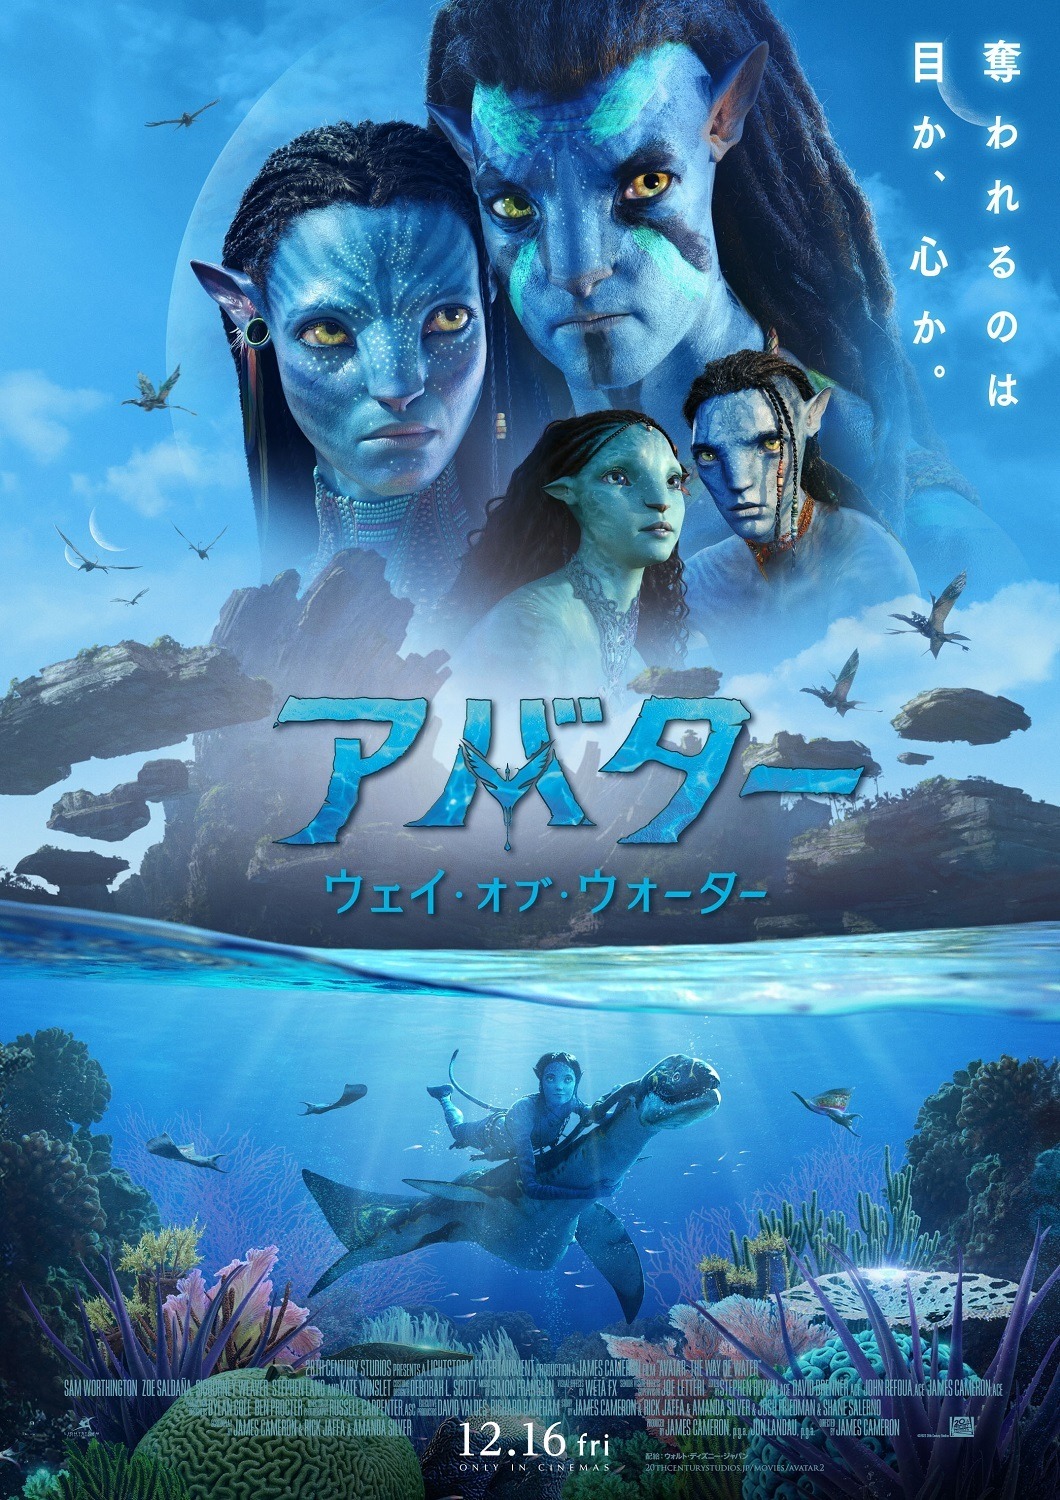 The art of Avatar : ジェームズ・キャメロン『アバター』の世界-